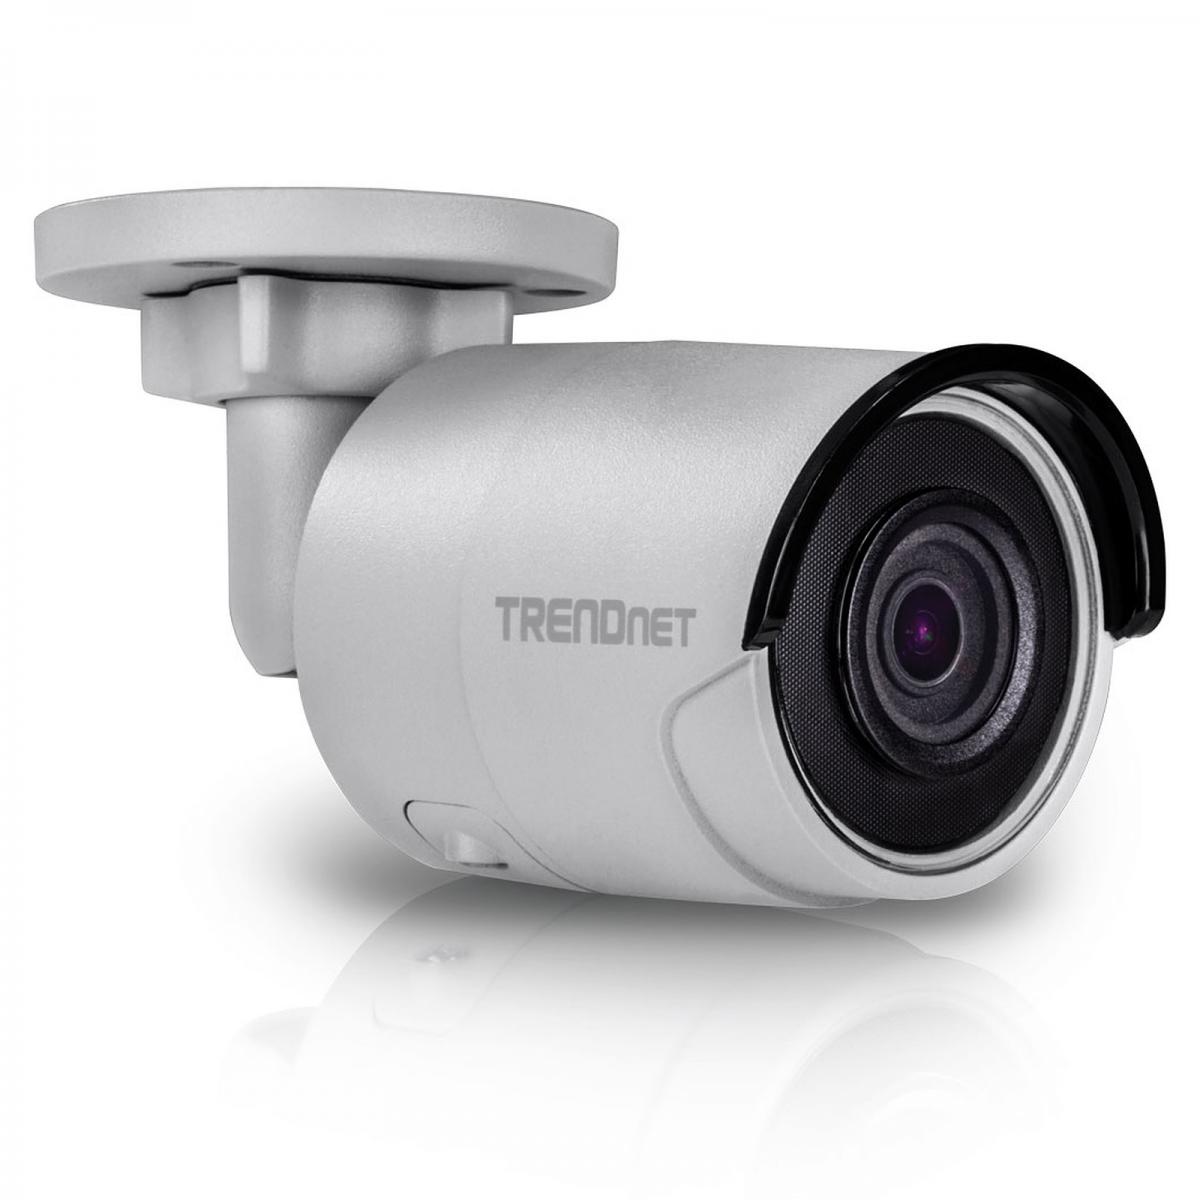 Trendnet - TRENDNET TV-IP1318PI - Caméra de surveillance connectée